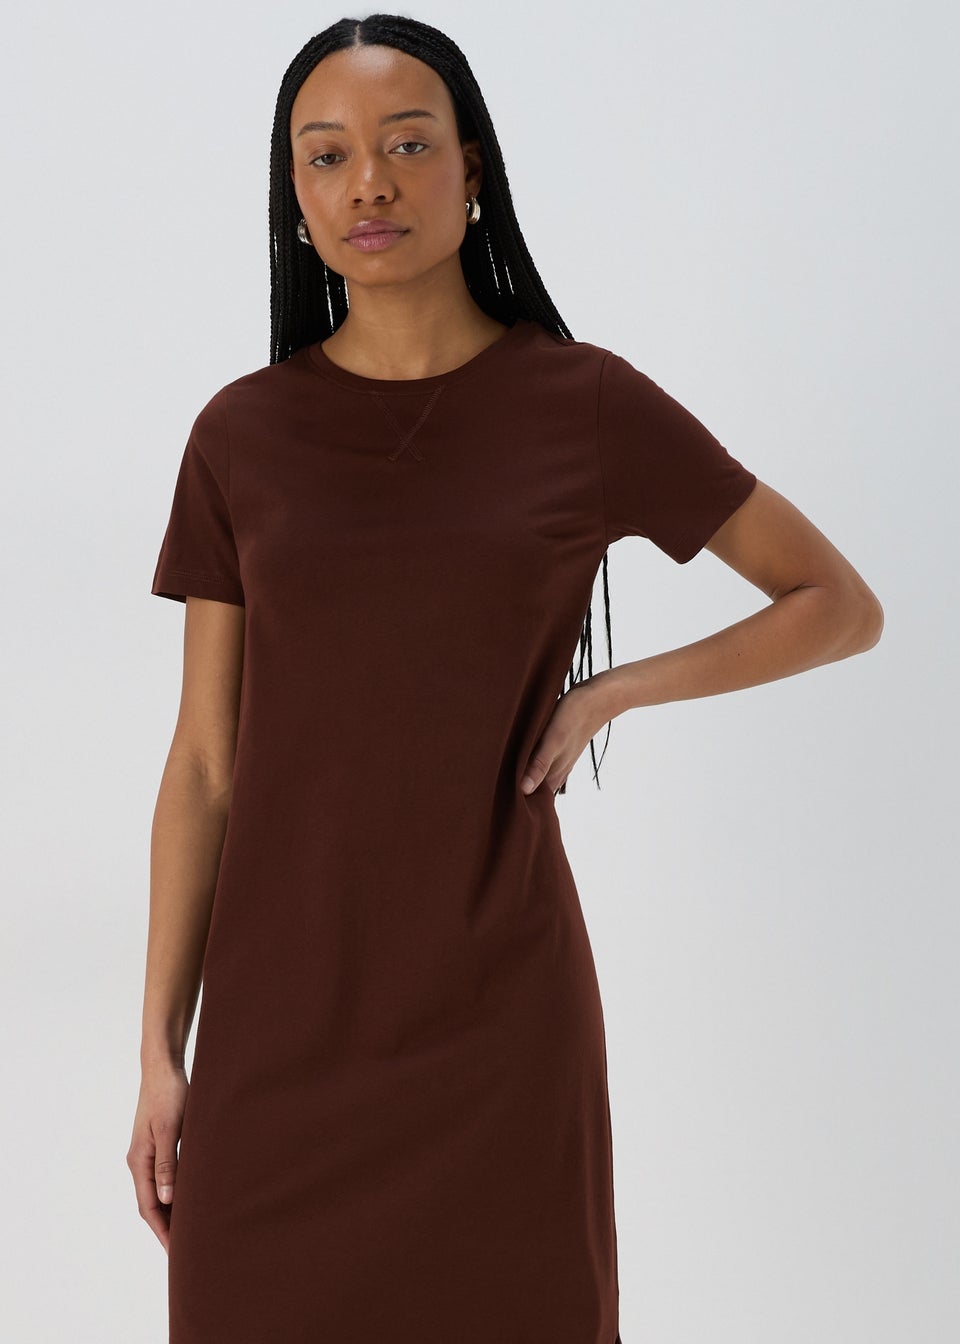 Brown Midi Jersey T-Shirt Dress